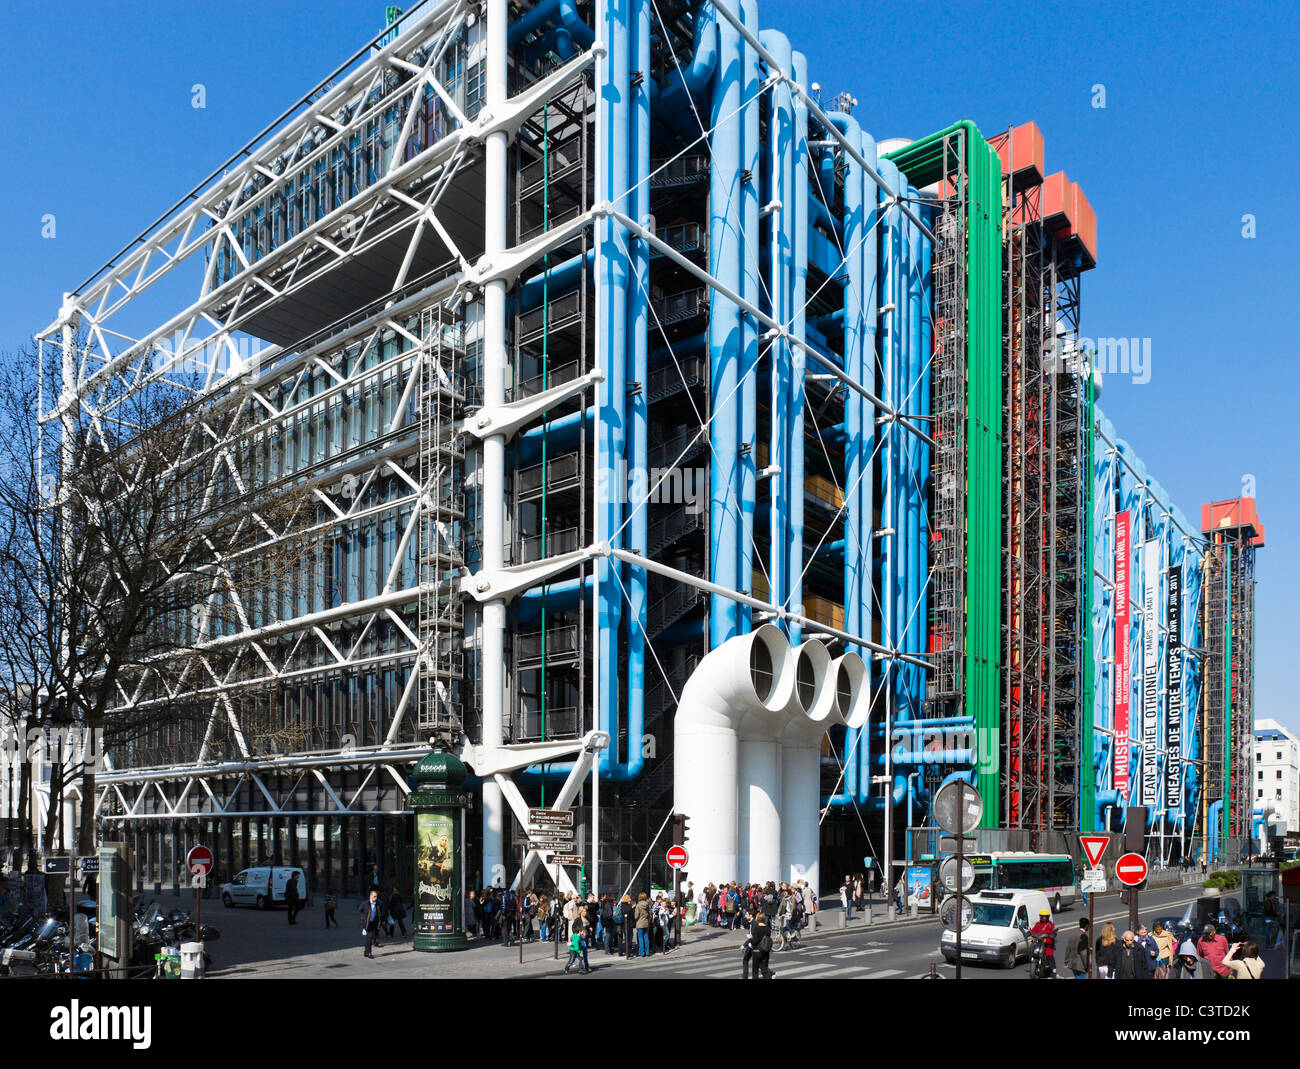 Centro Georges Pompidou, Beaubourg, distrito 4º arrondissement de París, Francia Foto de stock